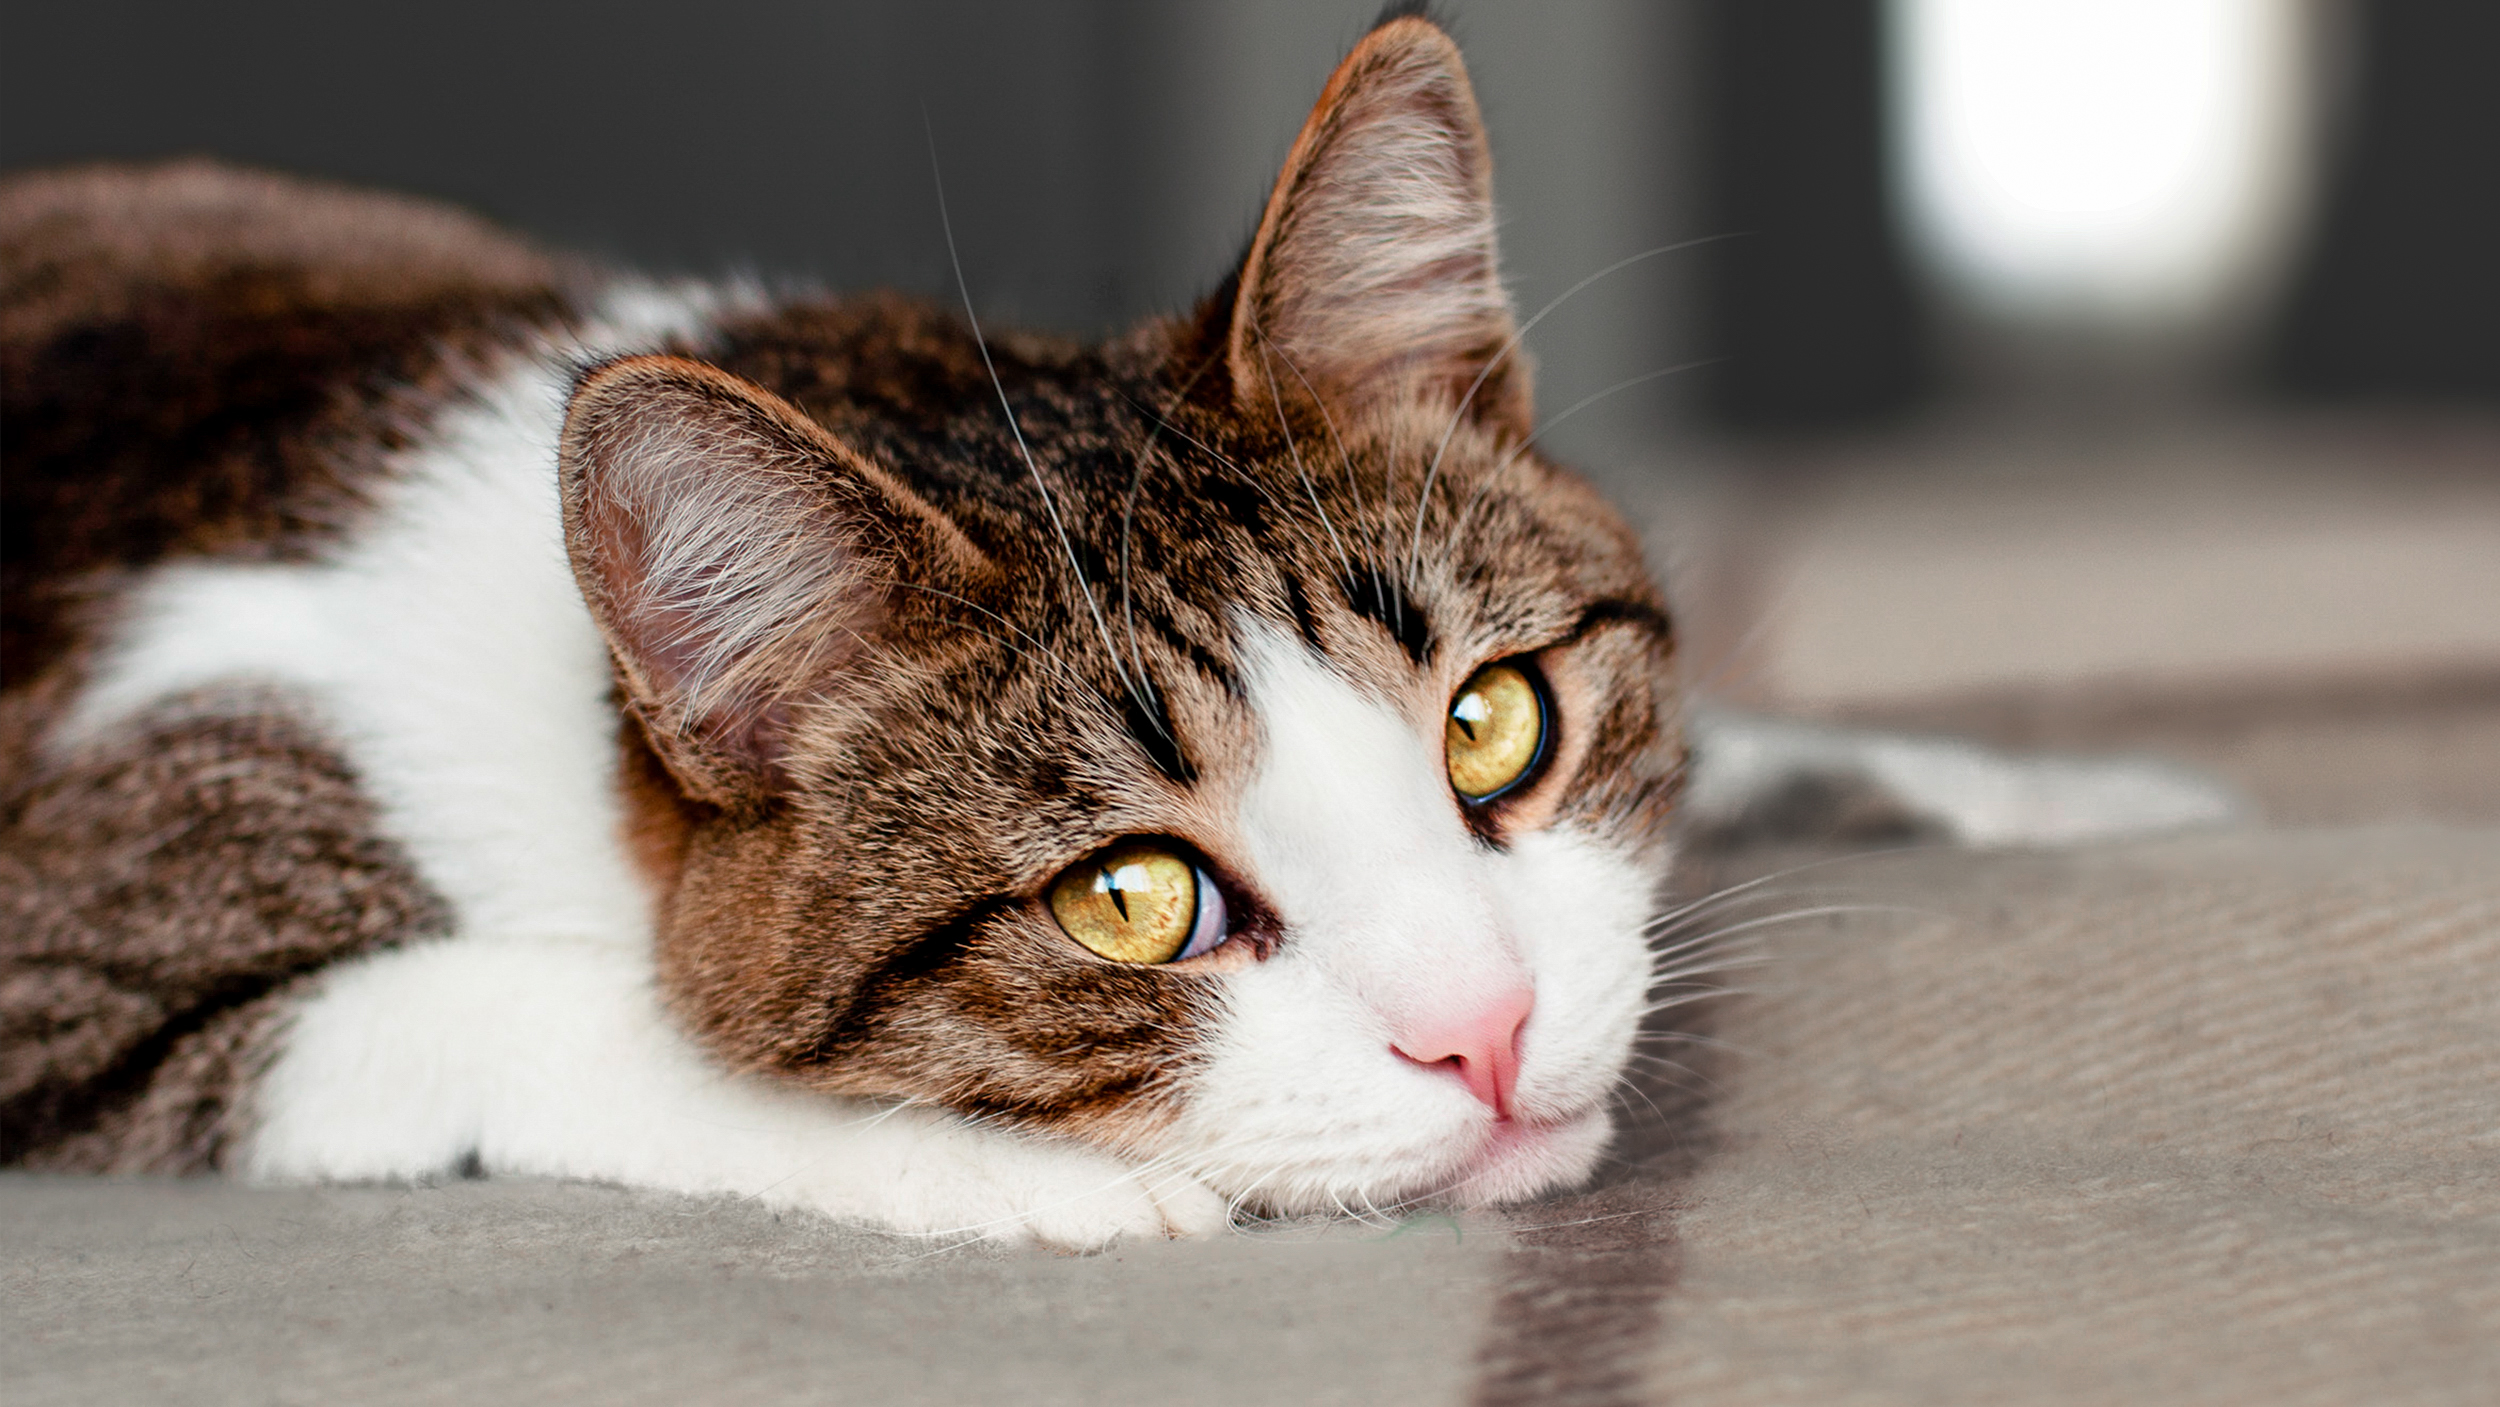 Gato adulto acostado en espacio cerrado sobre una alfombra.